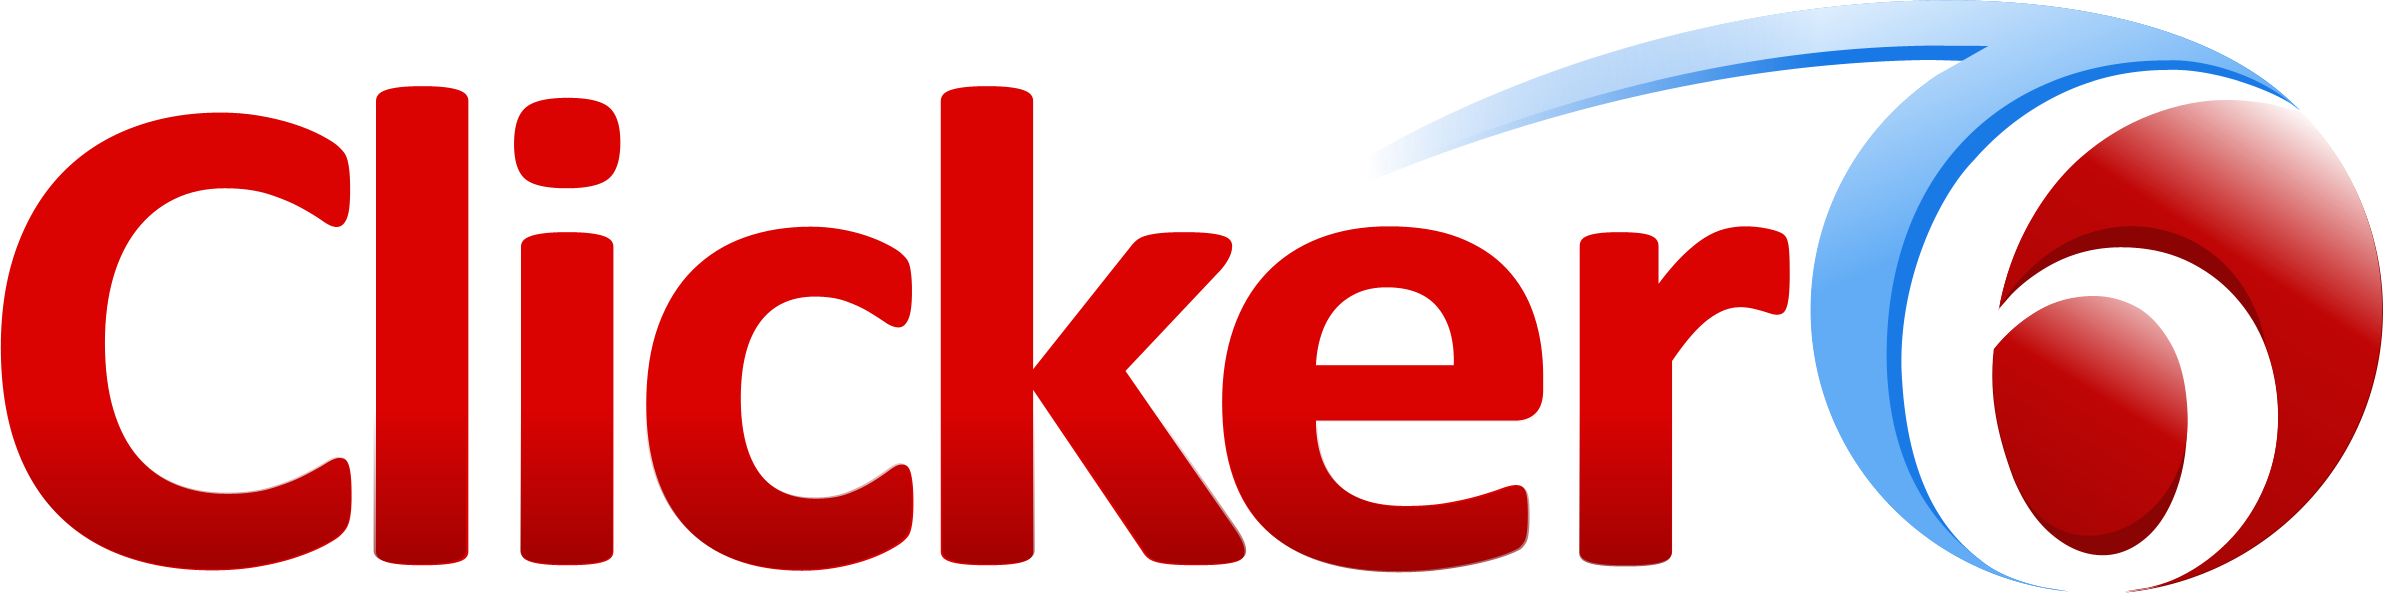 Clicker 6 Logo Clipart (2383x593), Png Download